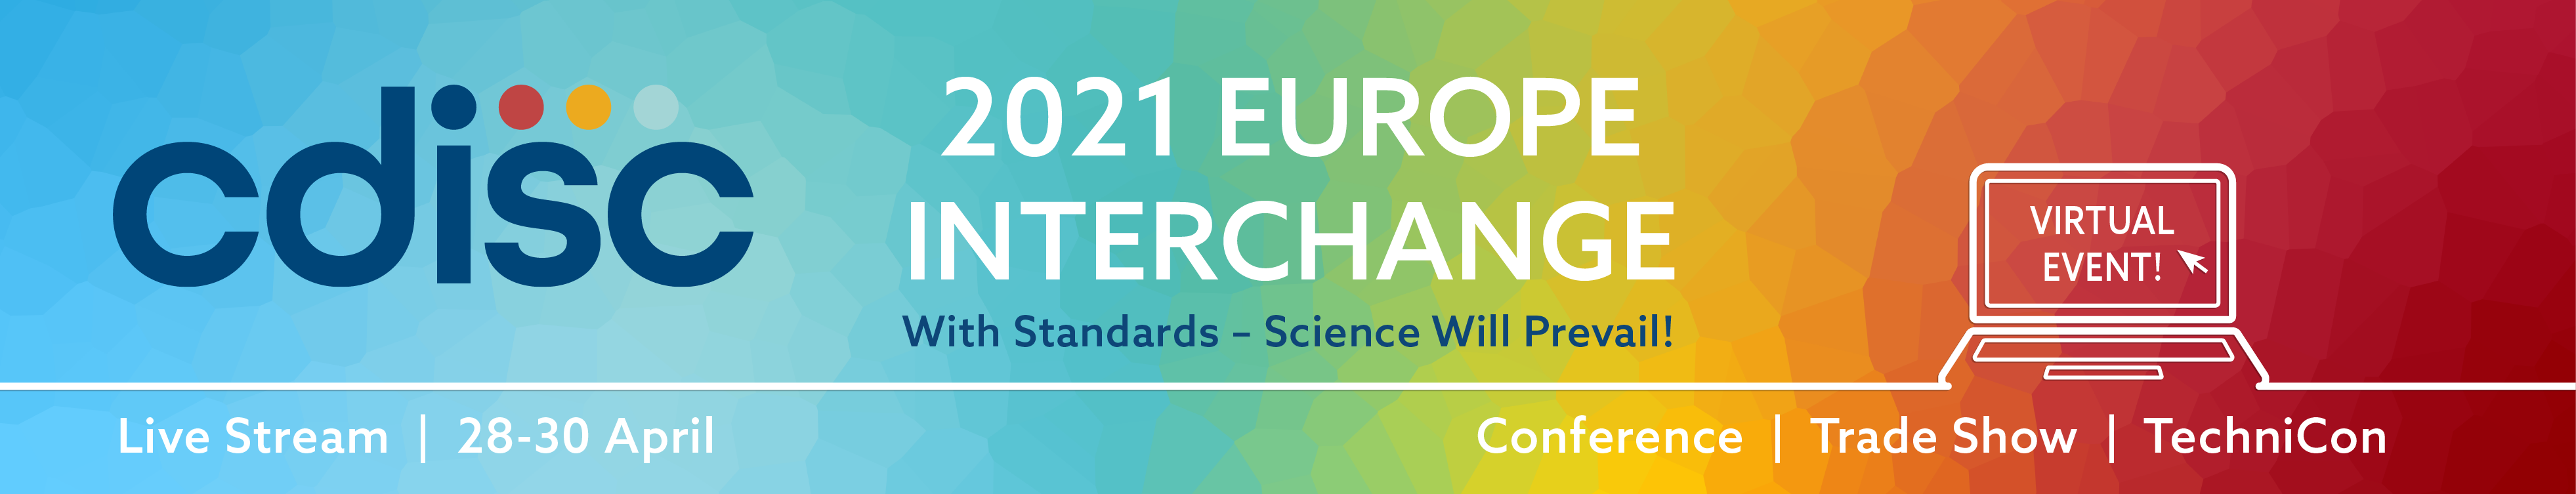 2021 Europe Interchange CDISC